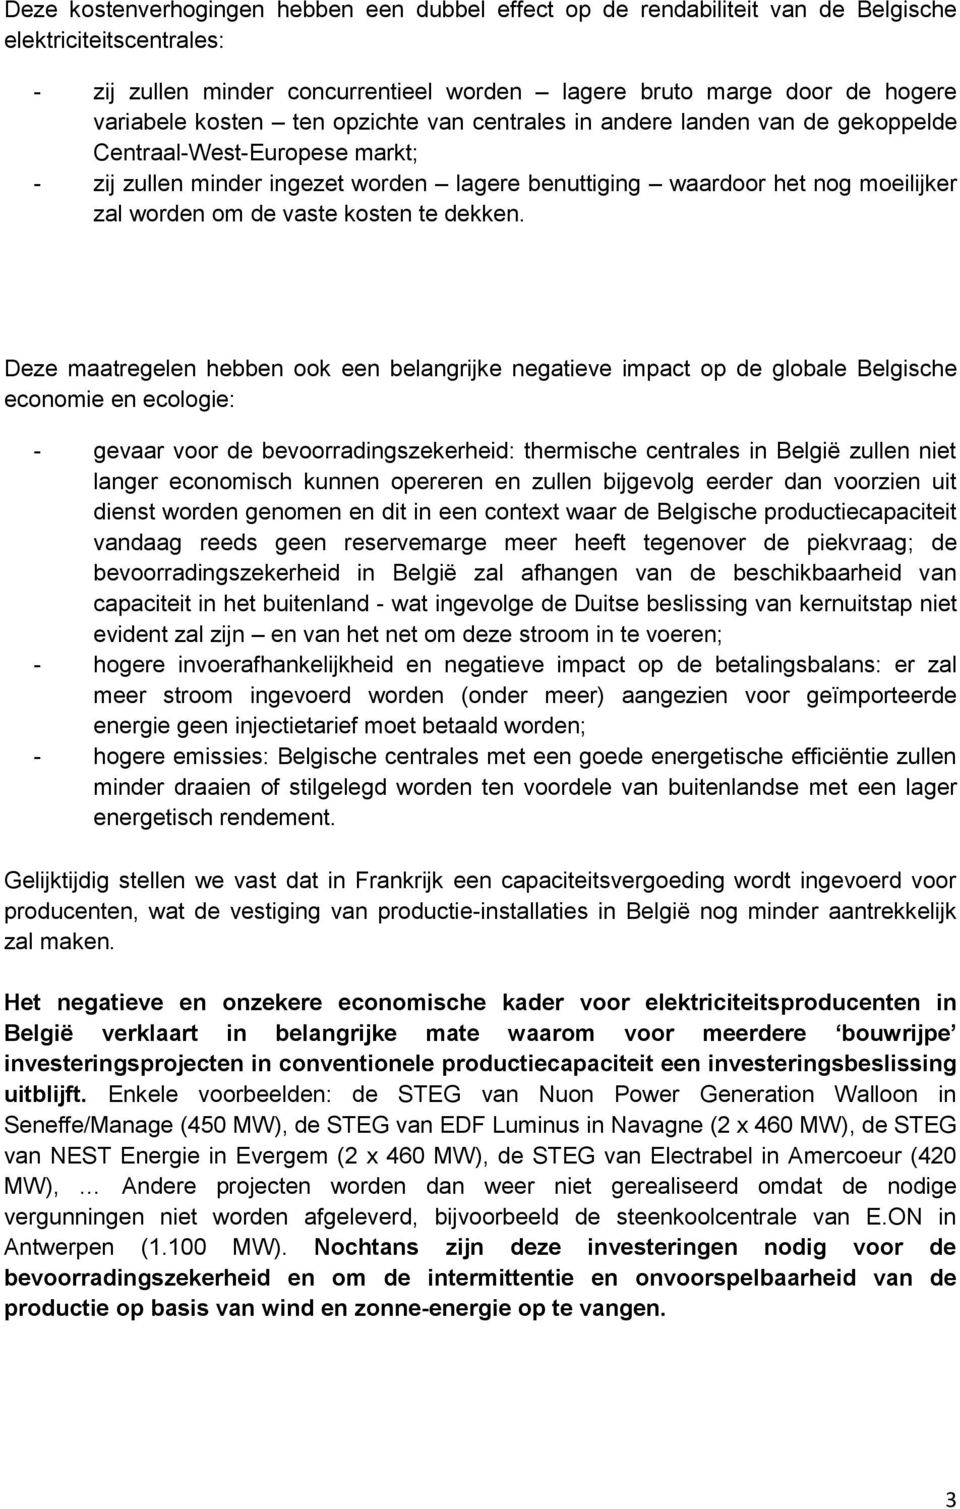 Deze maatregelen hebben k een belangrijke negatieve impact p de glbale Belgische ecnmie en eclgie: - gevaar vr de bevrradingszekerheid: thermische centrales in België zullen niet langer ecnmisch